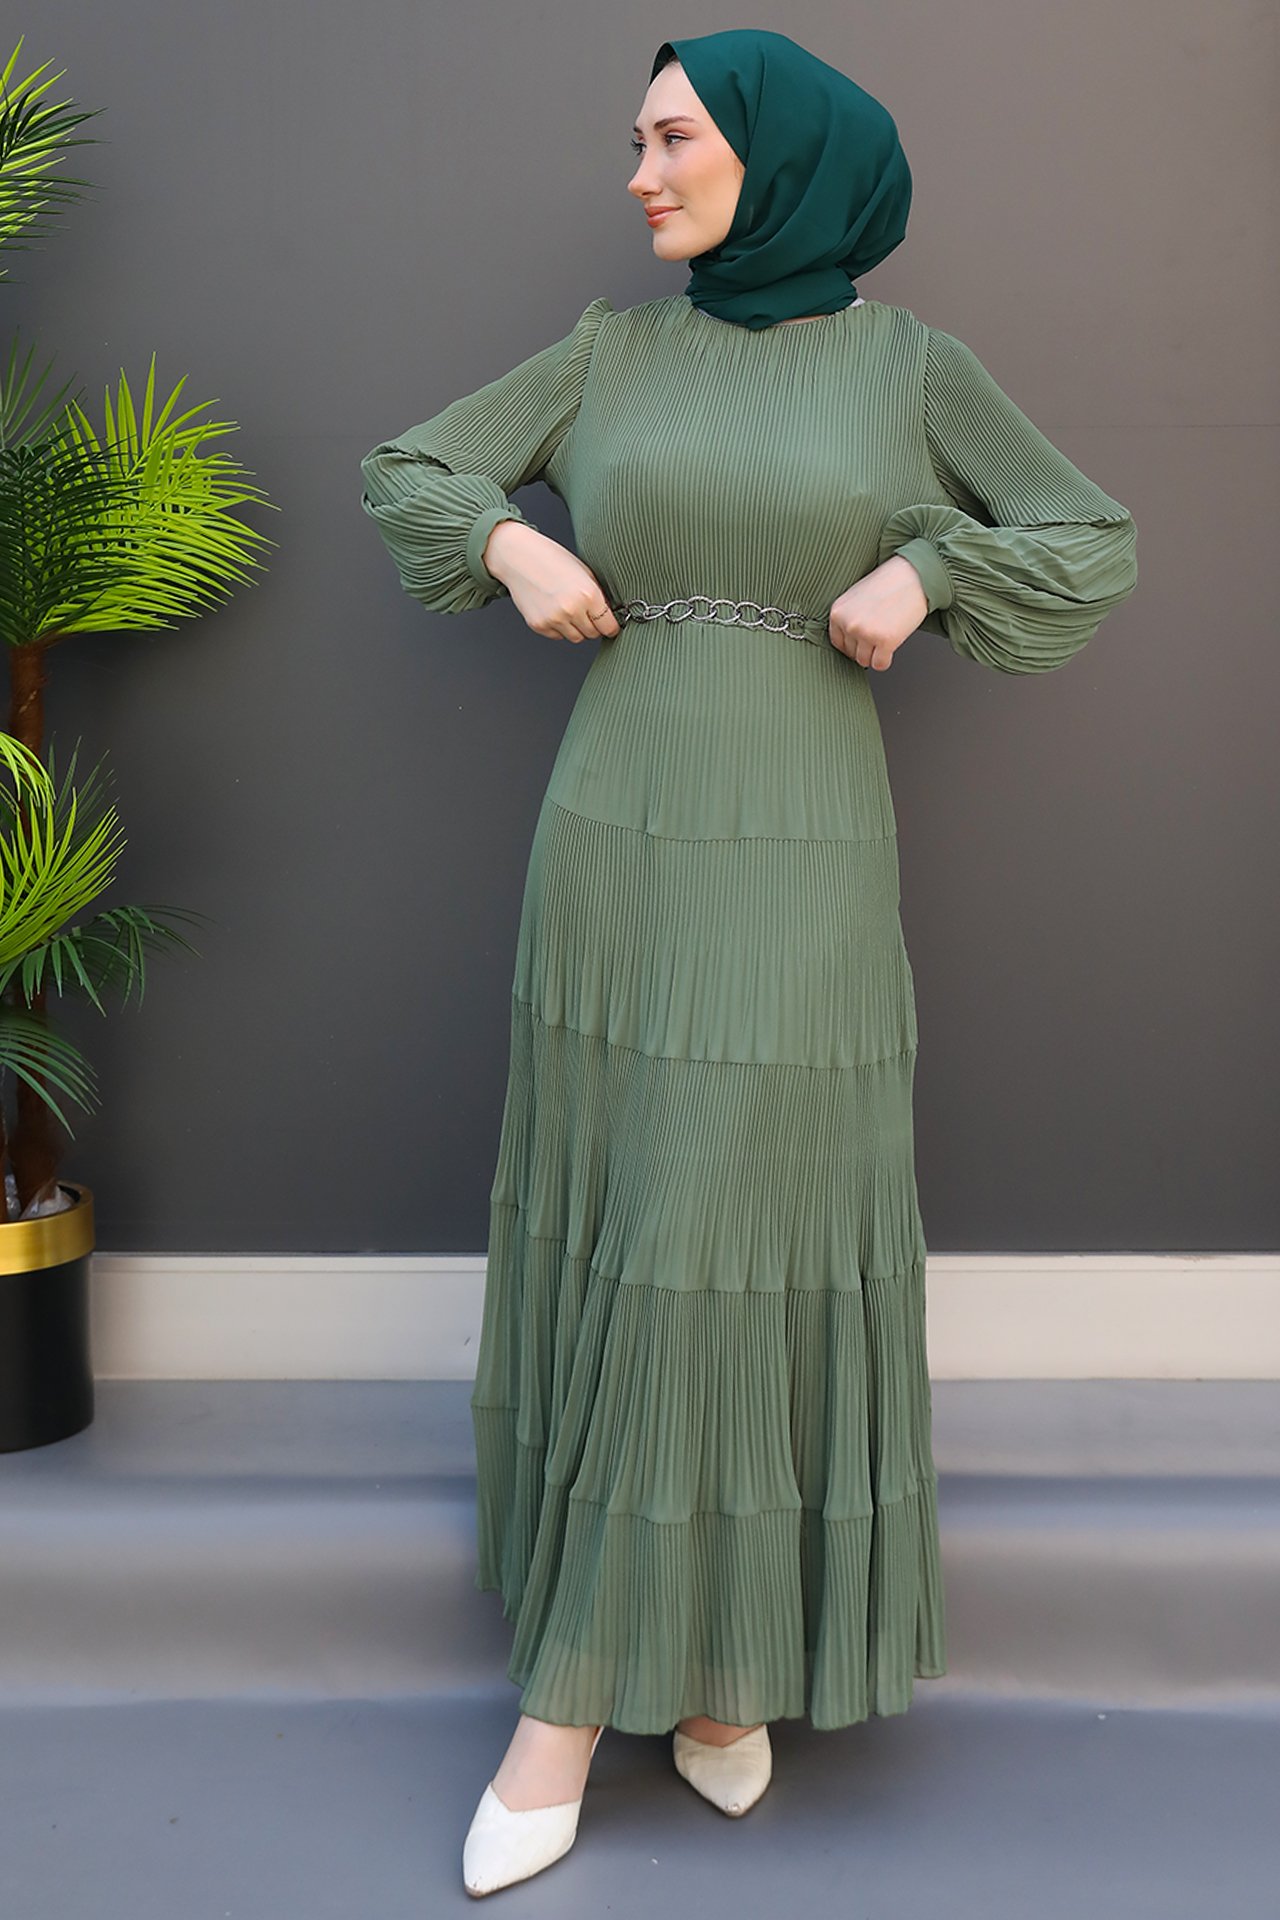 GİZ AGİYİM - Pilisoley Şifon Elbise Soft Yeşil